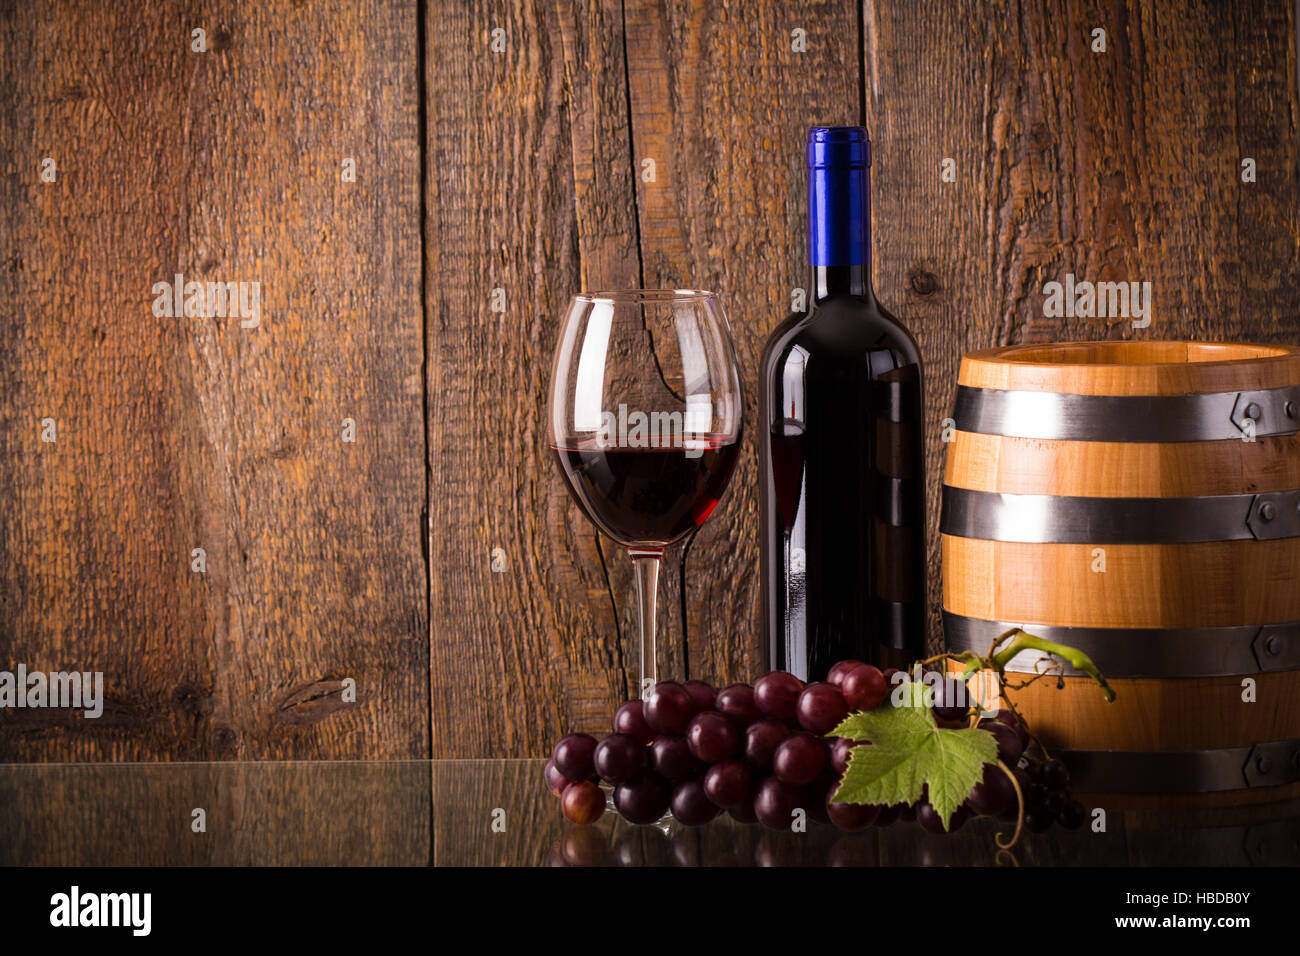 Verre de vin rouge avec une bouteille en verre avec fourreau raisins sur fond de bois Banque D'Images